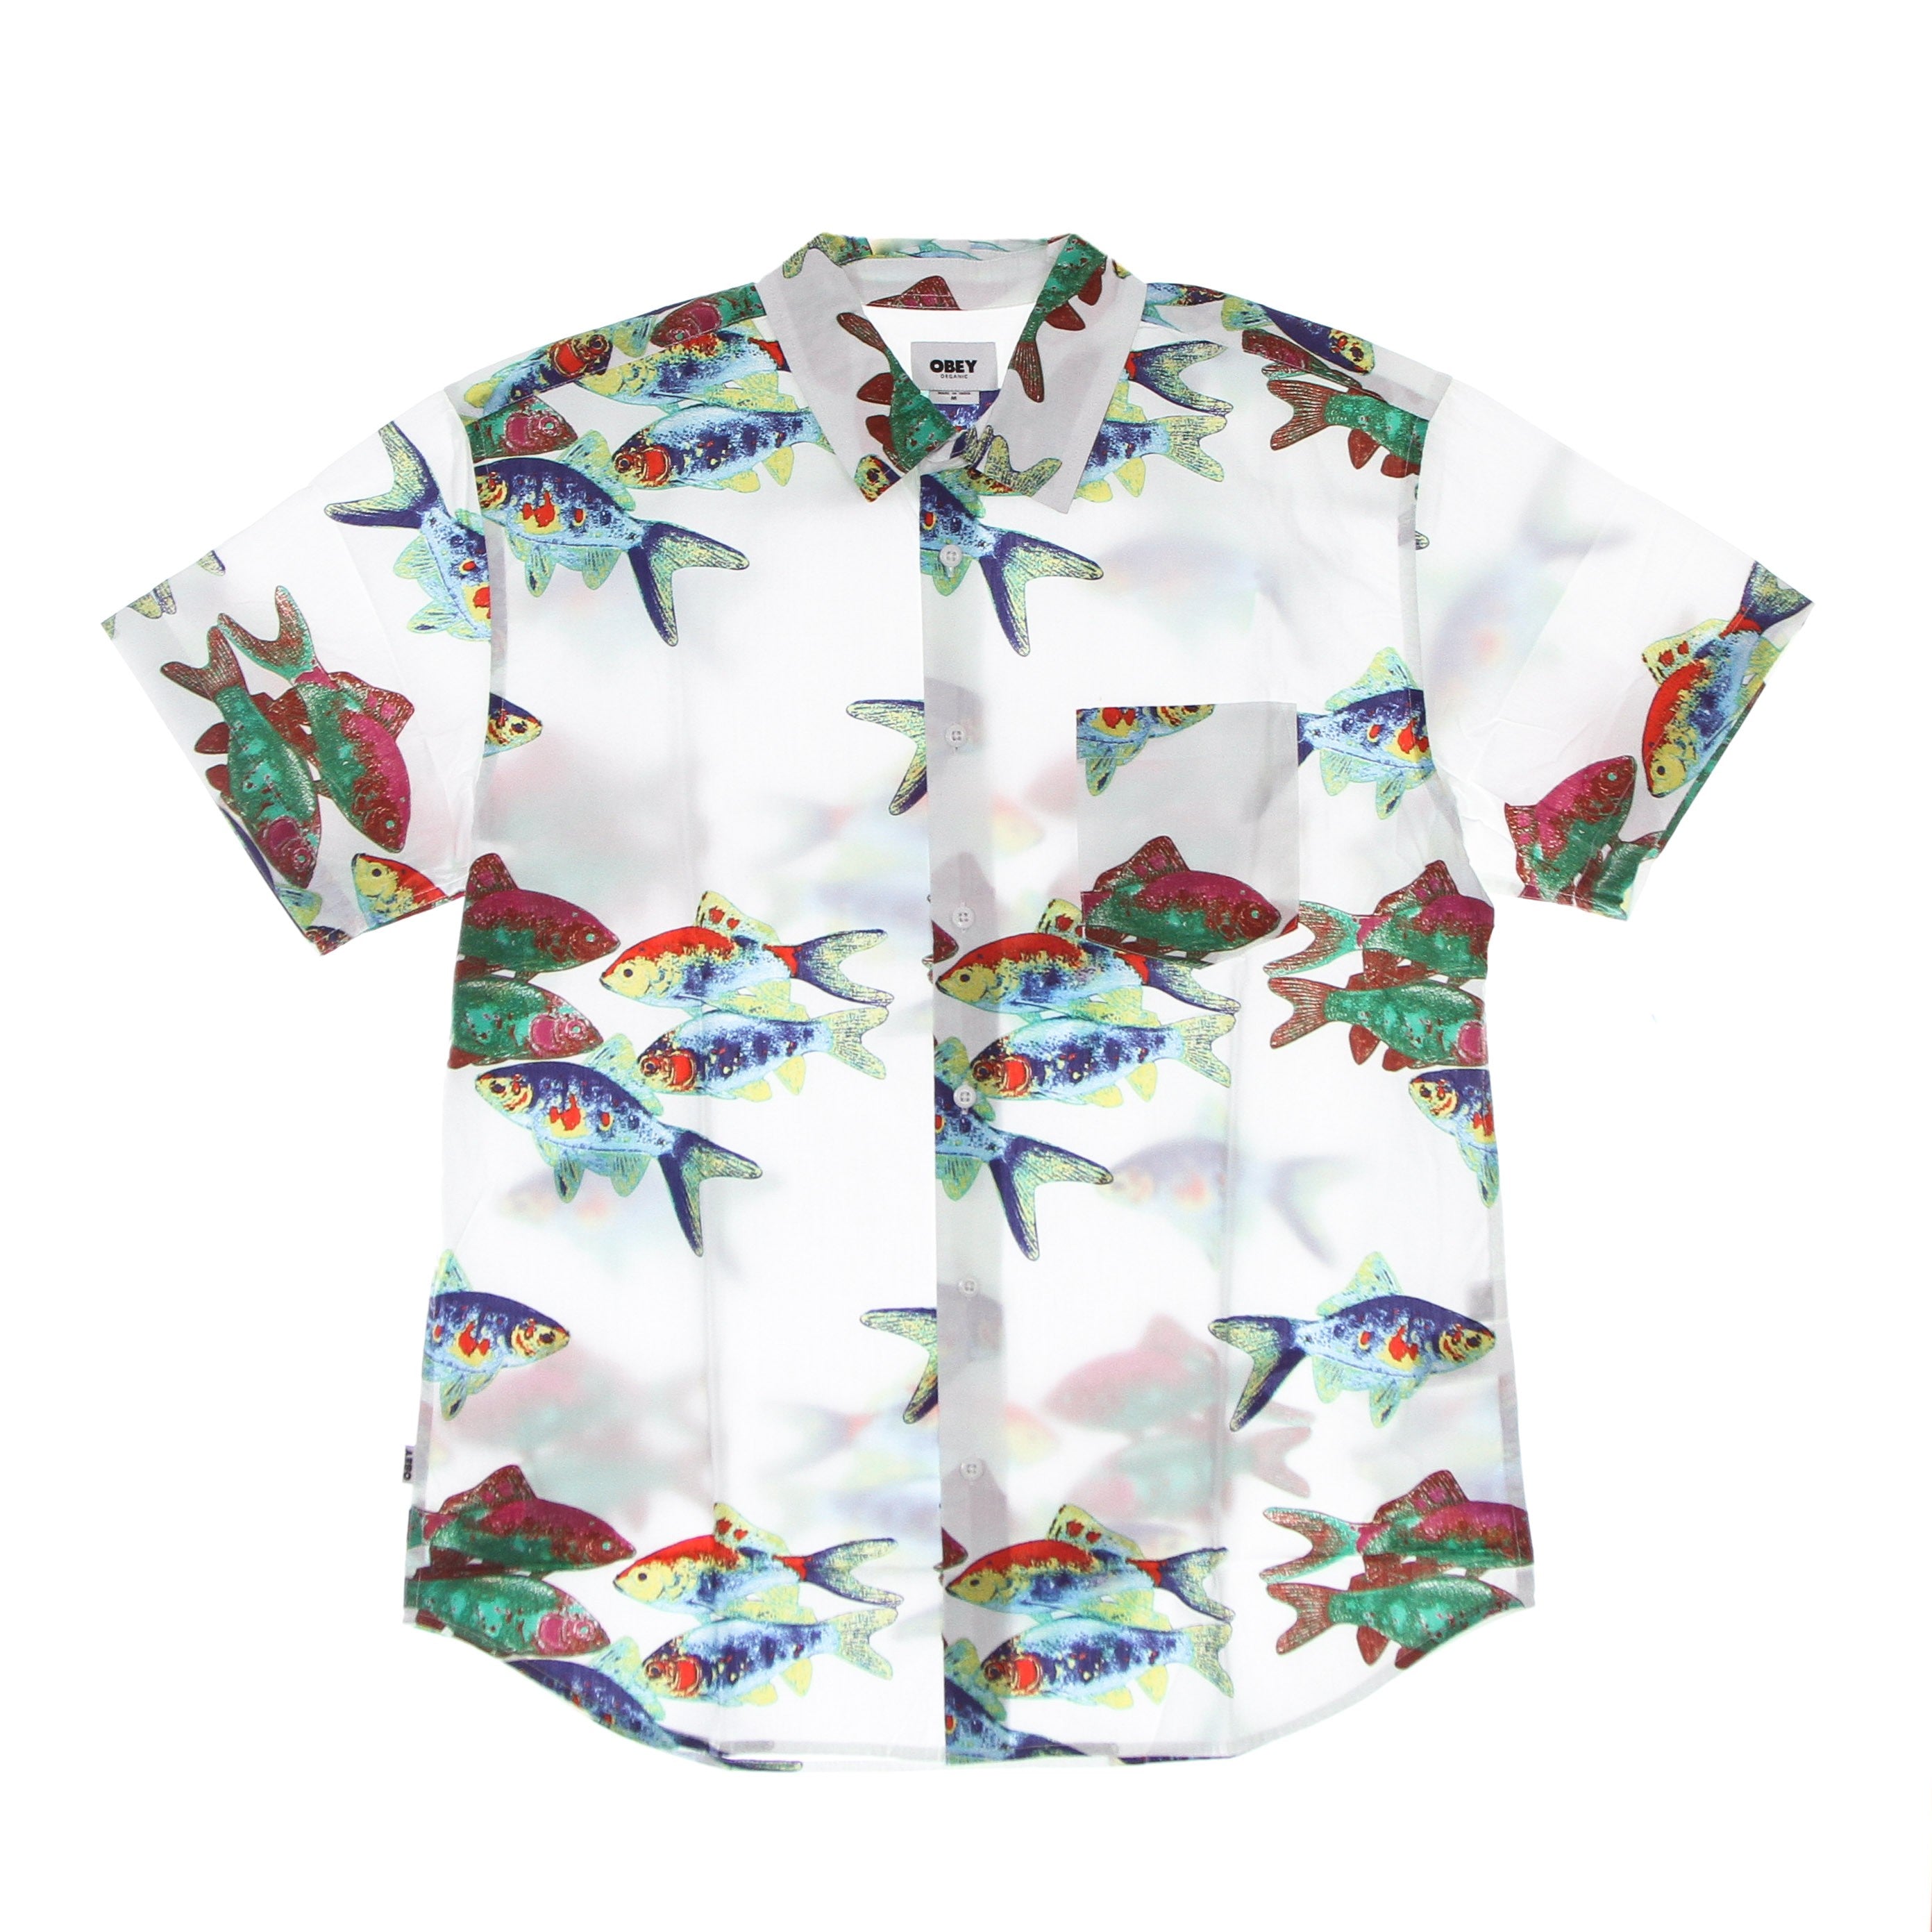 Fishbowl Woven Men's Short Sleeve Shirt White/multi